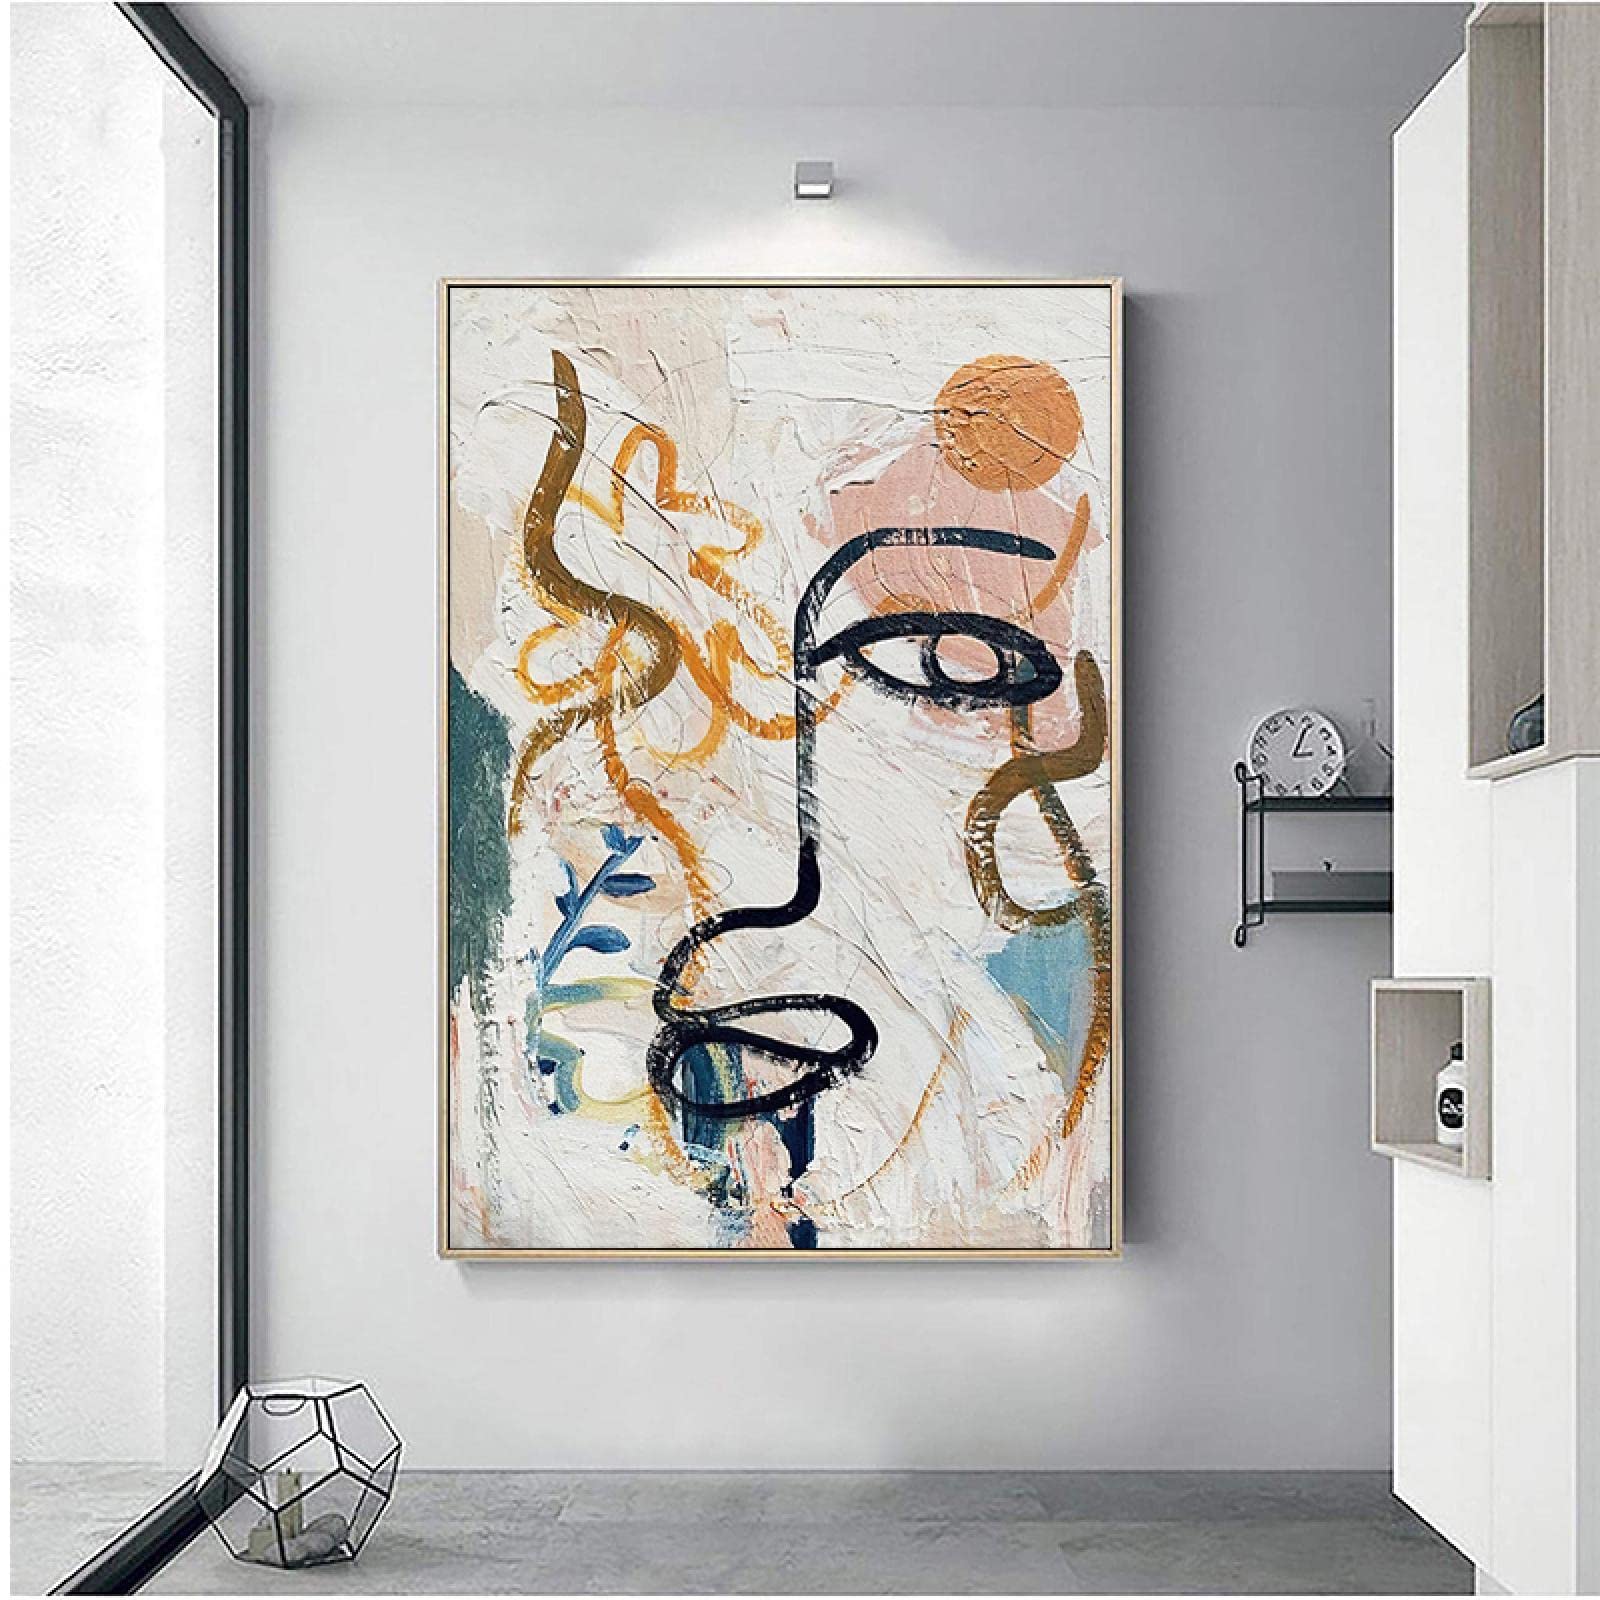 Rumlly Retro Matisse Graffiti Poster und Drucke Abstraktes menschliches Gesicht Wandkunst Leinwand Gemälde für Wohnzimmer Nordic Home Decor 40x60cm rahmenlos